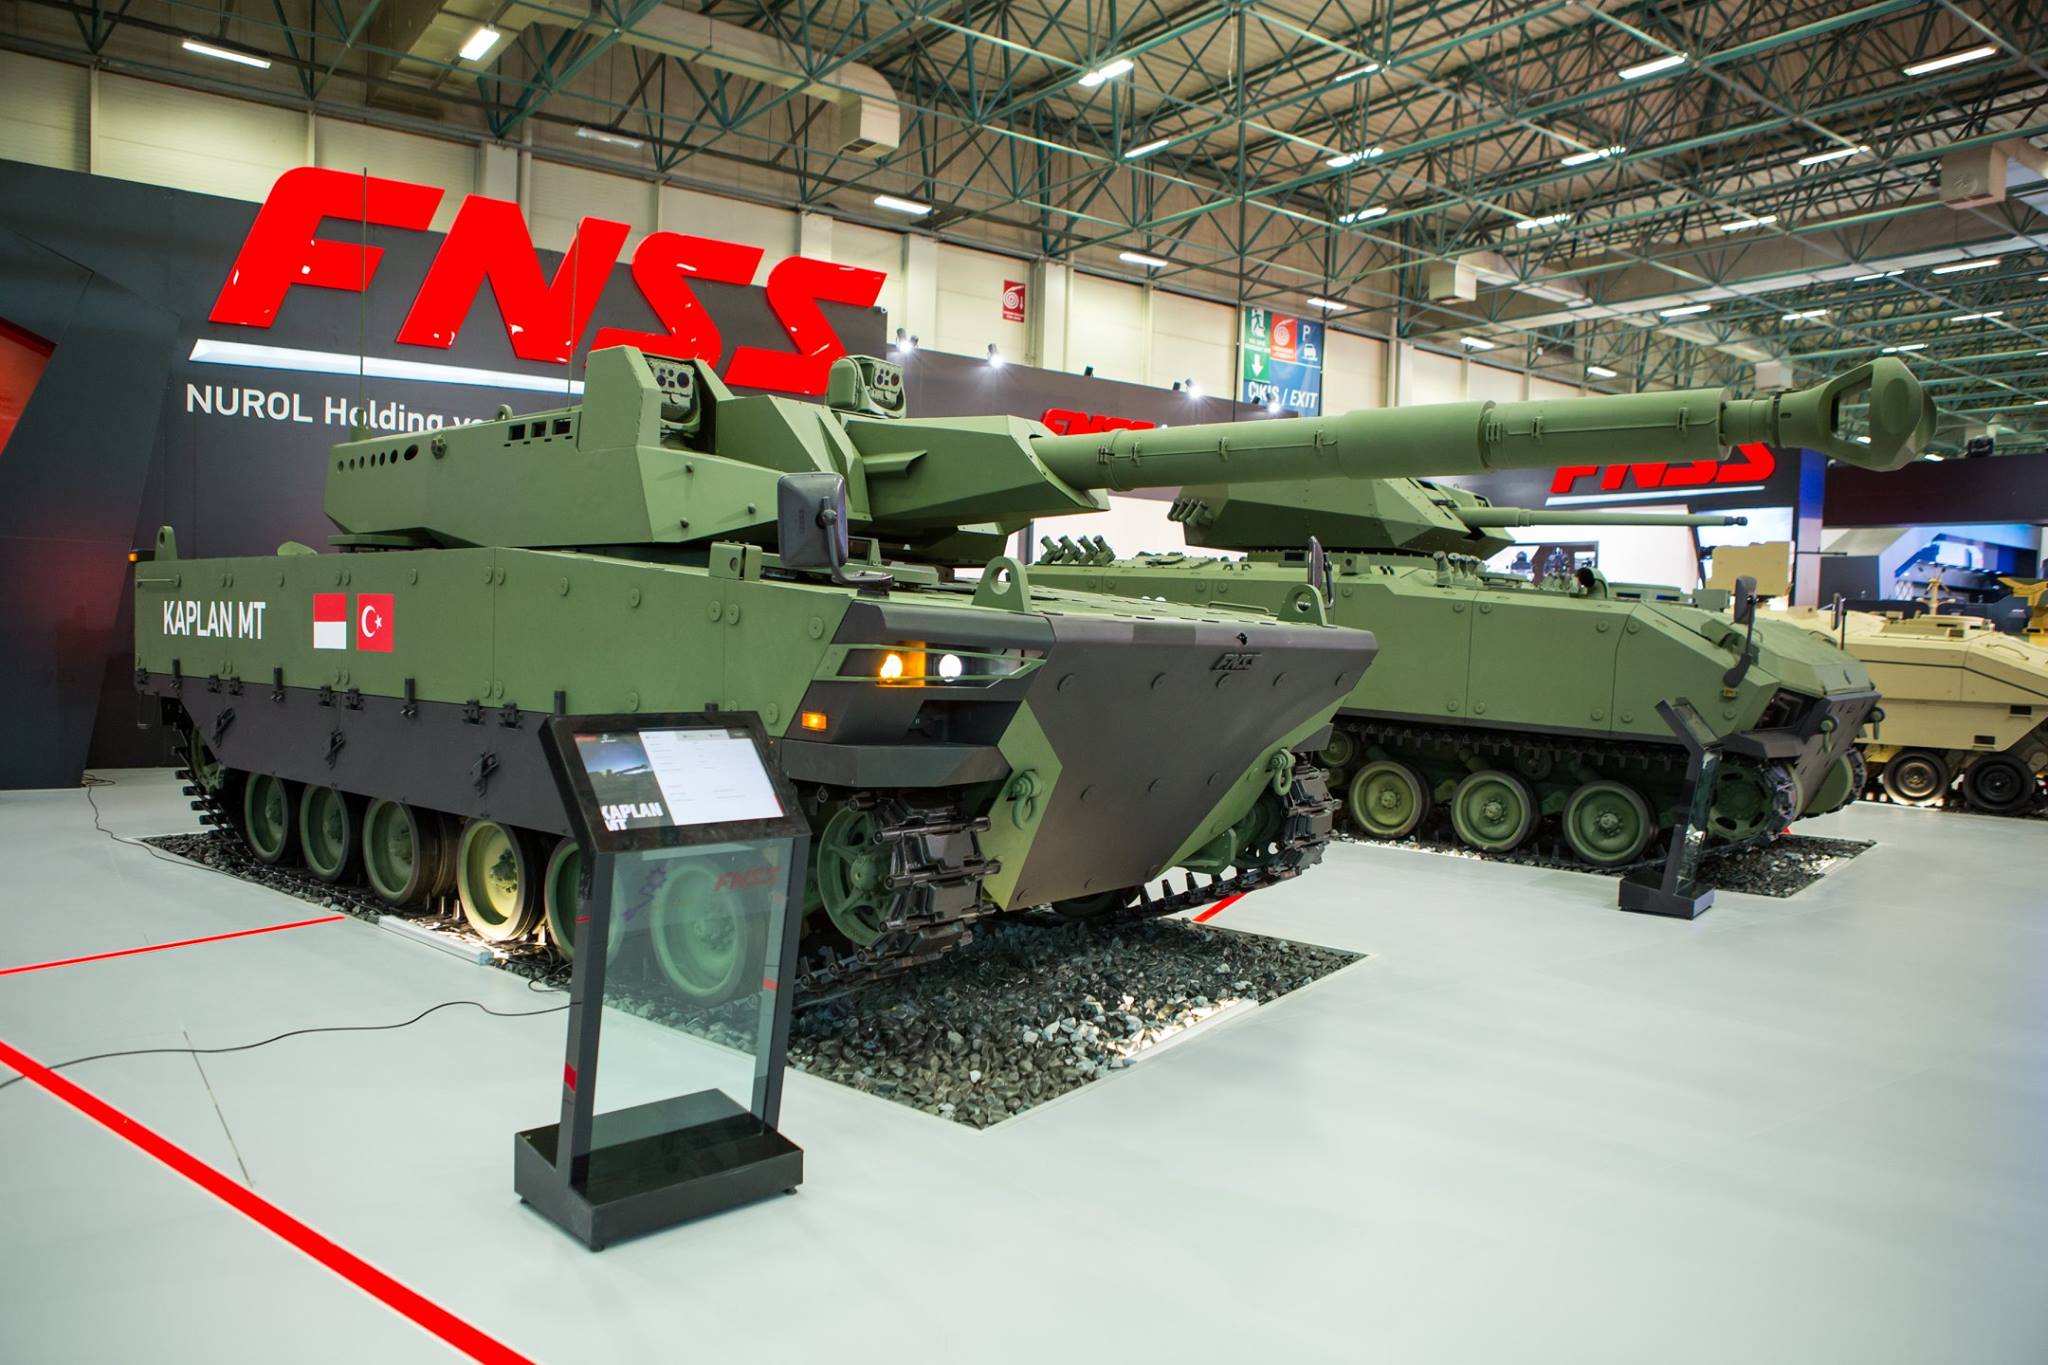 KAPLAN MT’nin seri üretimine 2019’da başlanacak! Milli tank KAPLAN MT’nin özellikleri neler?